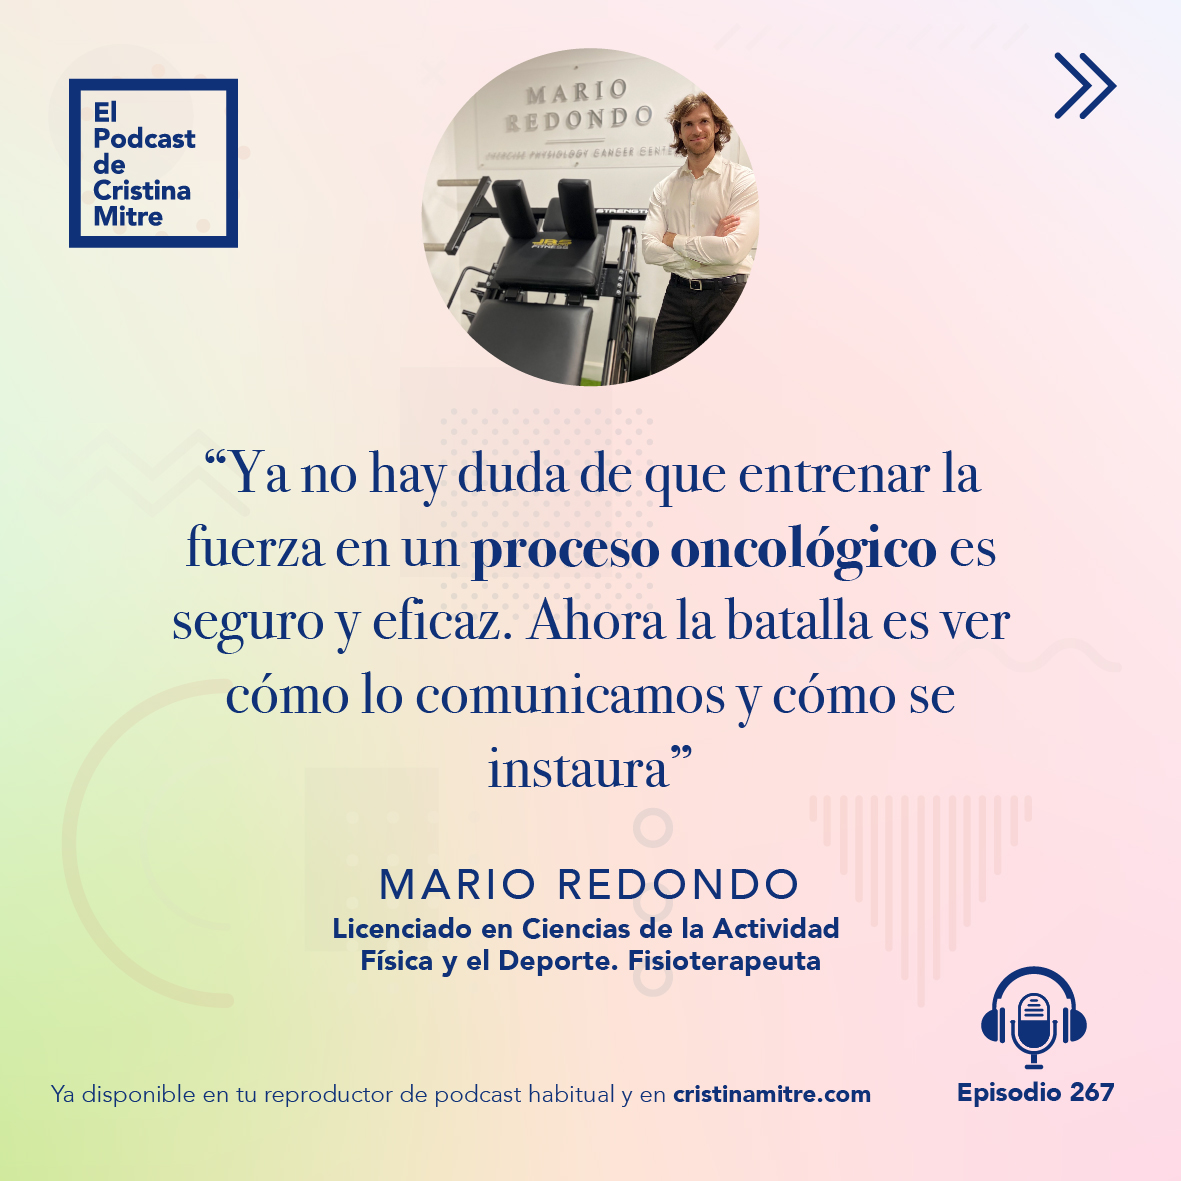 El podcast de Cristina Mitre Mario Redondo entrenamiento cancer